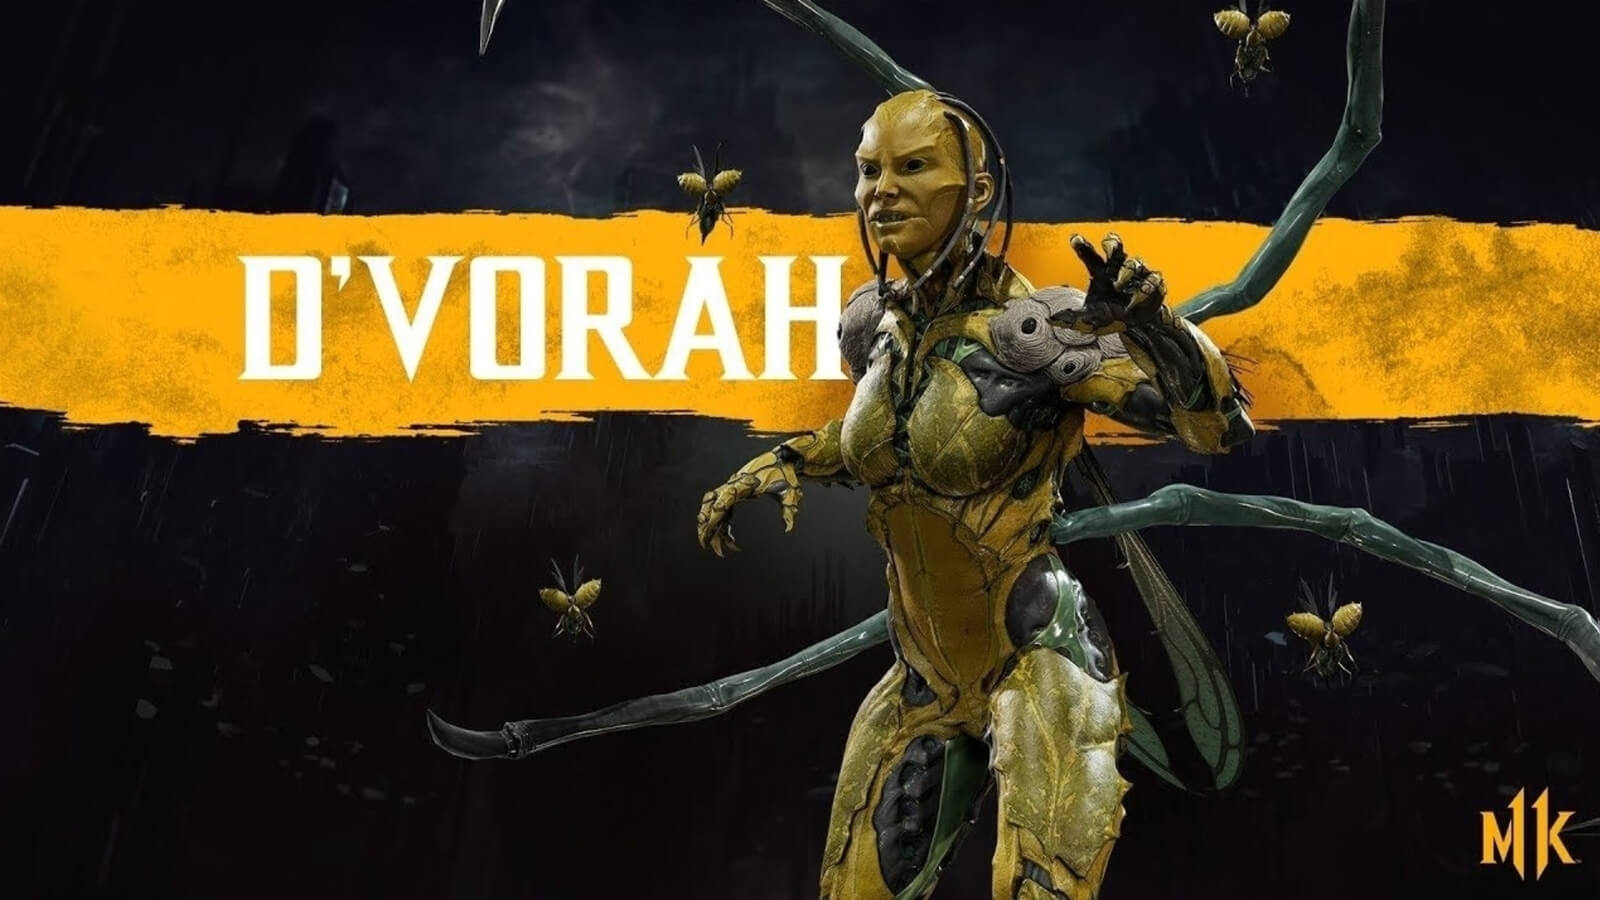 D’Vorah em Mortal Kombat 11